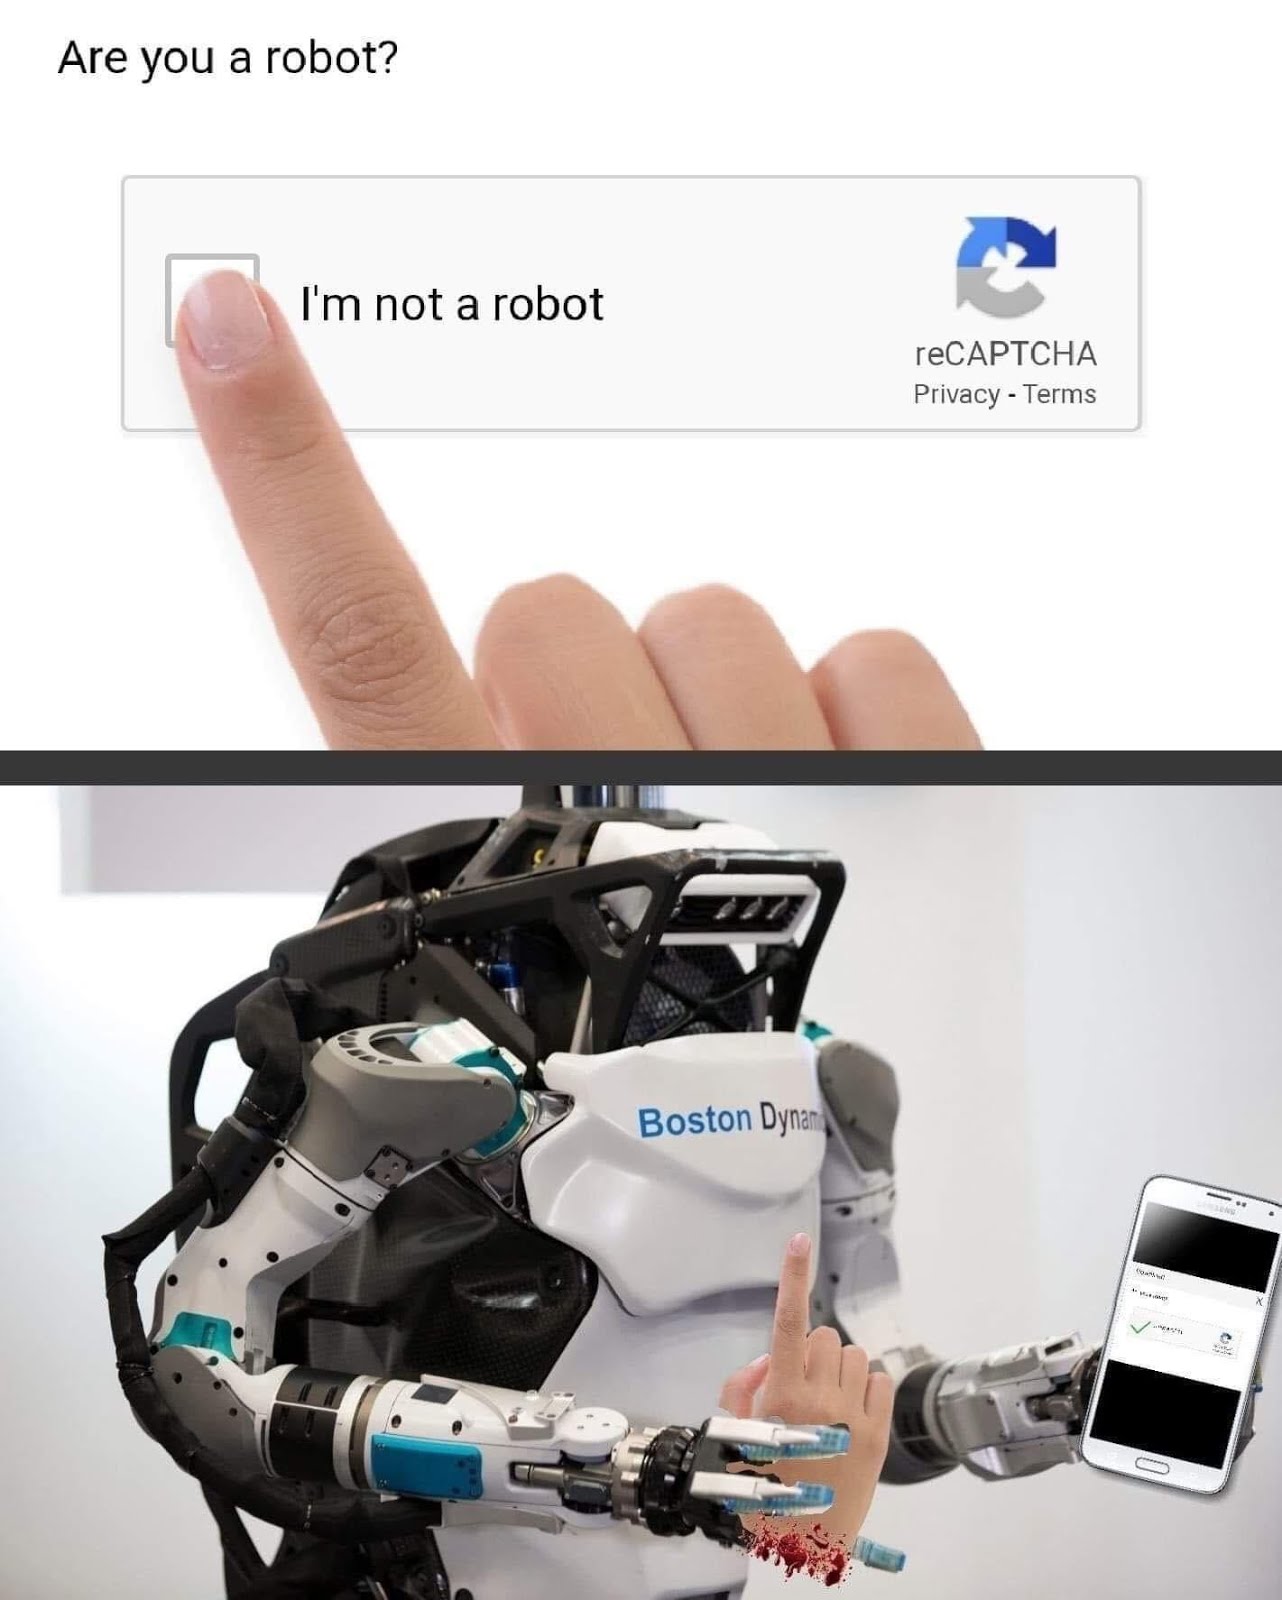 Мемы анекдоты тосты юмор: Немного черного юмора. #captcha #robot #ai #termi...